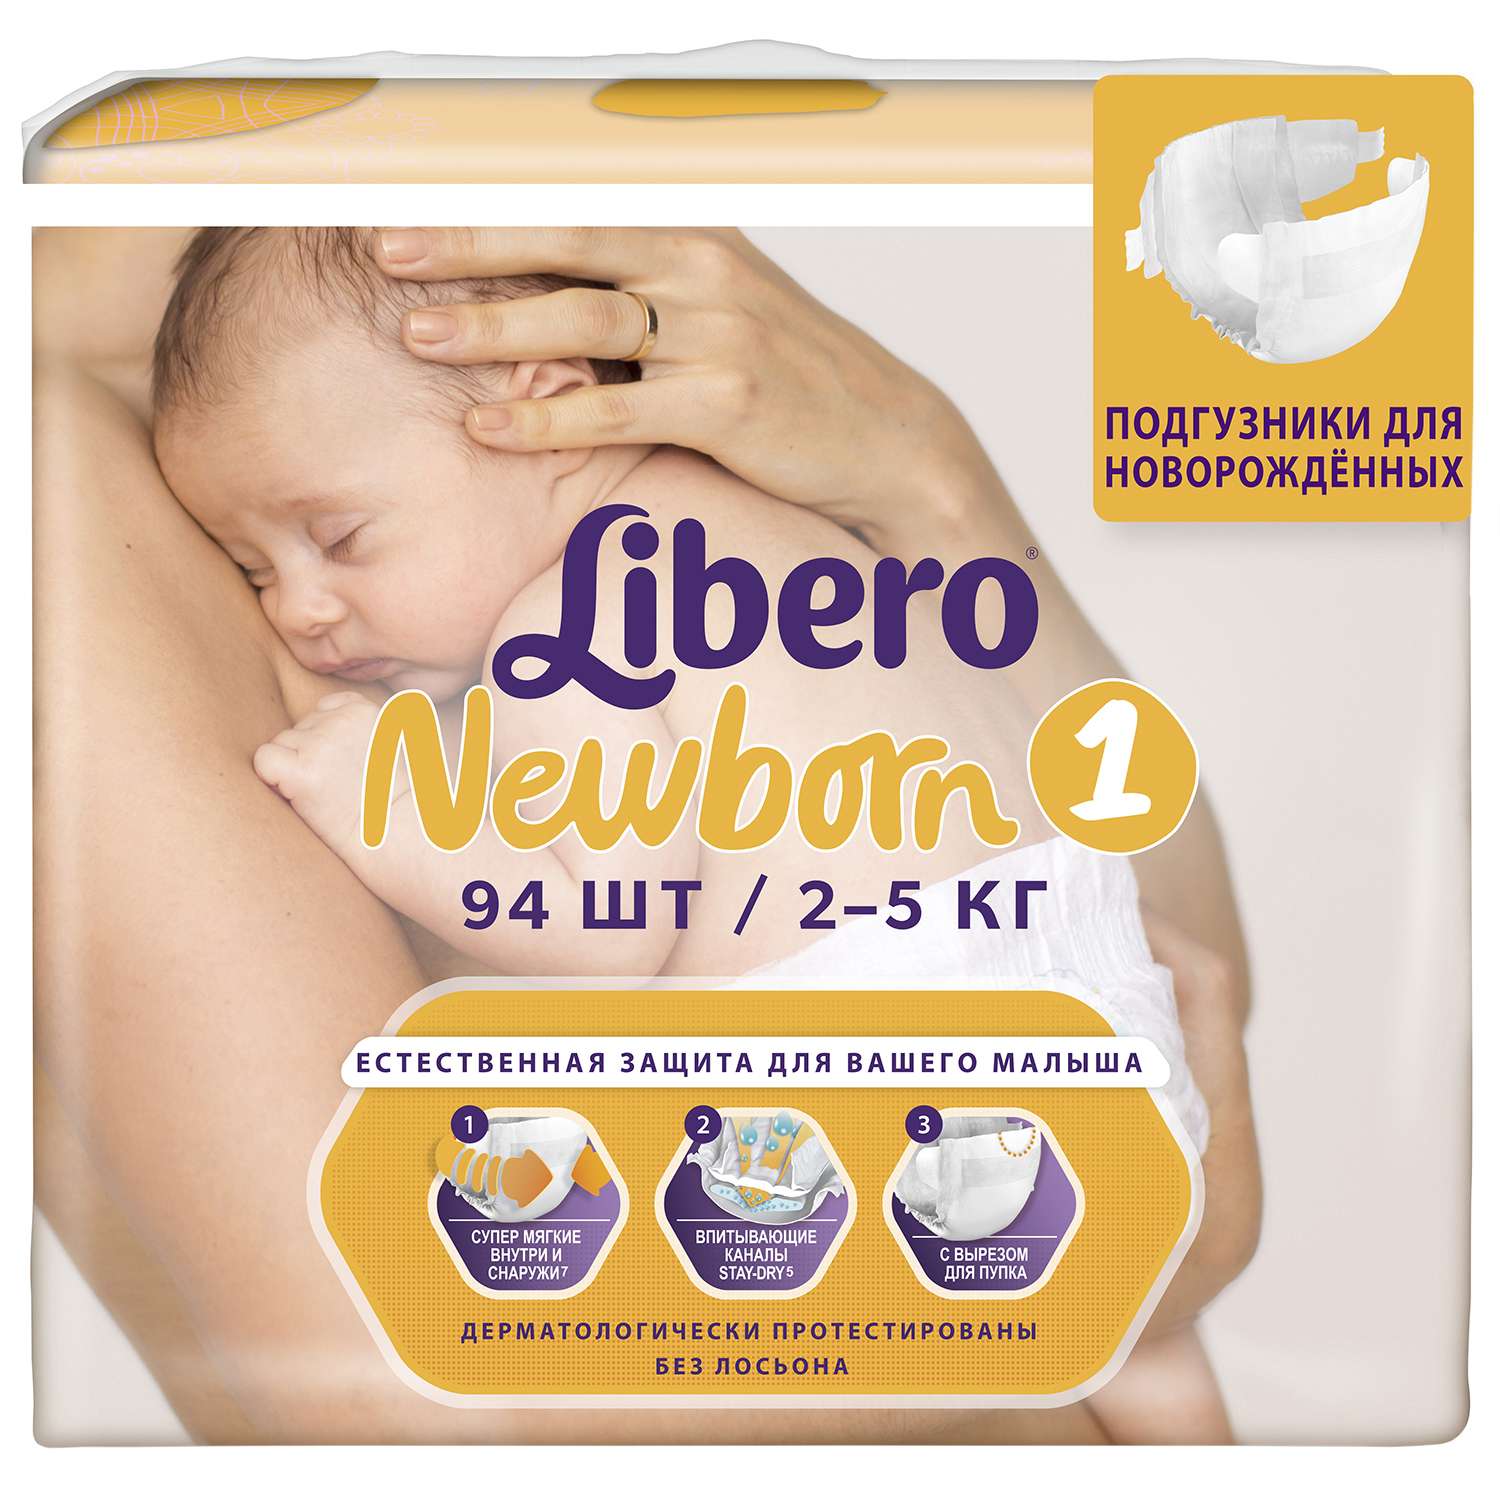 Подгузники Libero Newborn 1 2-5кг 94шт - фото 2